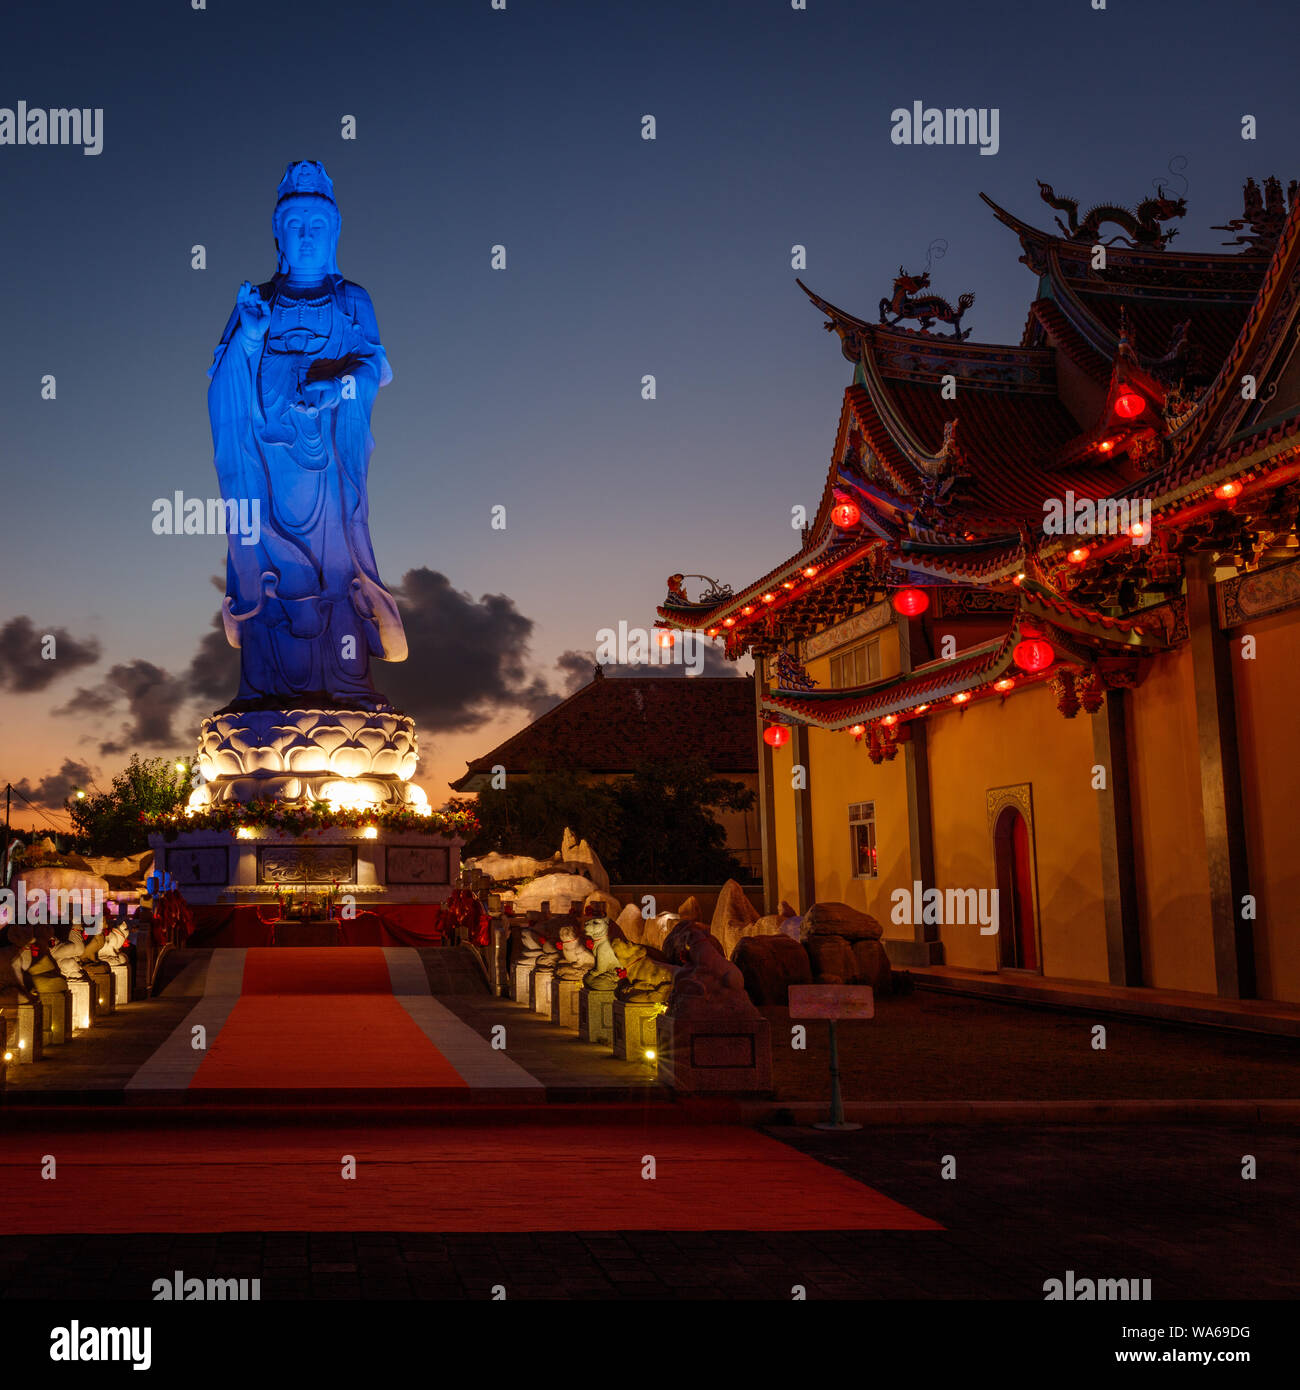 Statue von tianhou Mazu, Chinesischen Meer Göttin an Vihara Satya Dharma, chinesischen buddhistischen Tempel. Hafen Benoa, Bali, Indonesien. Nacht. Quadratisches Bild. Stockfoto